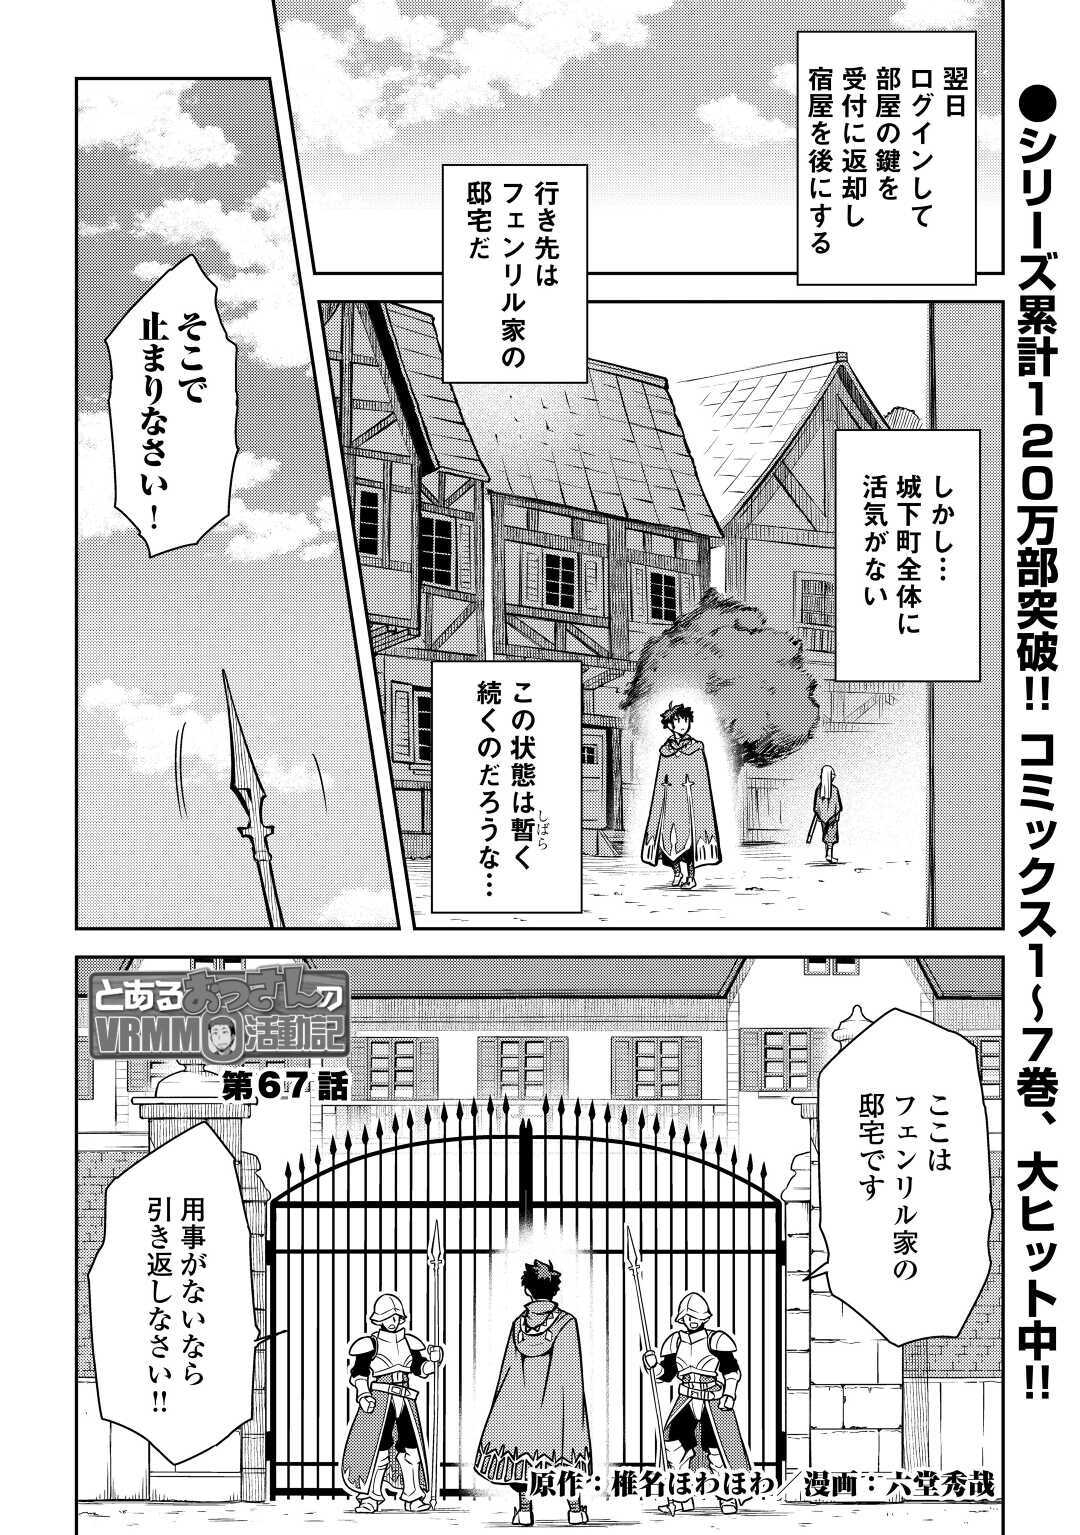 Toaru Ossan no VRMMO Katsudouki - Chapter 67 - Page 1